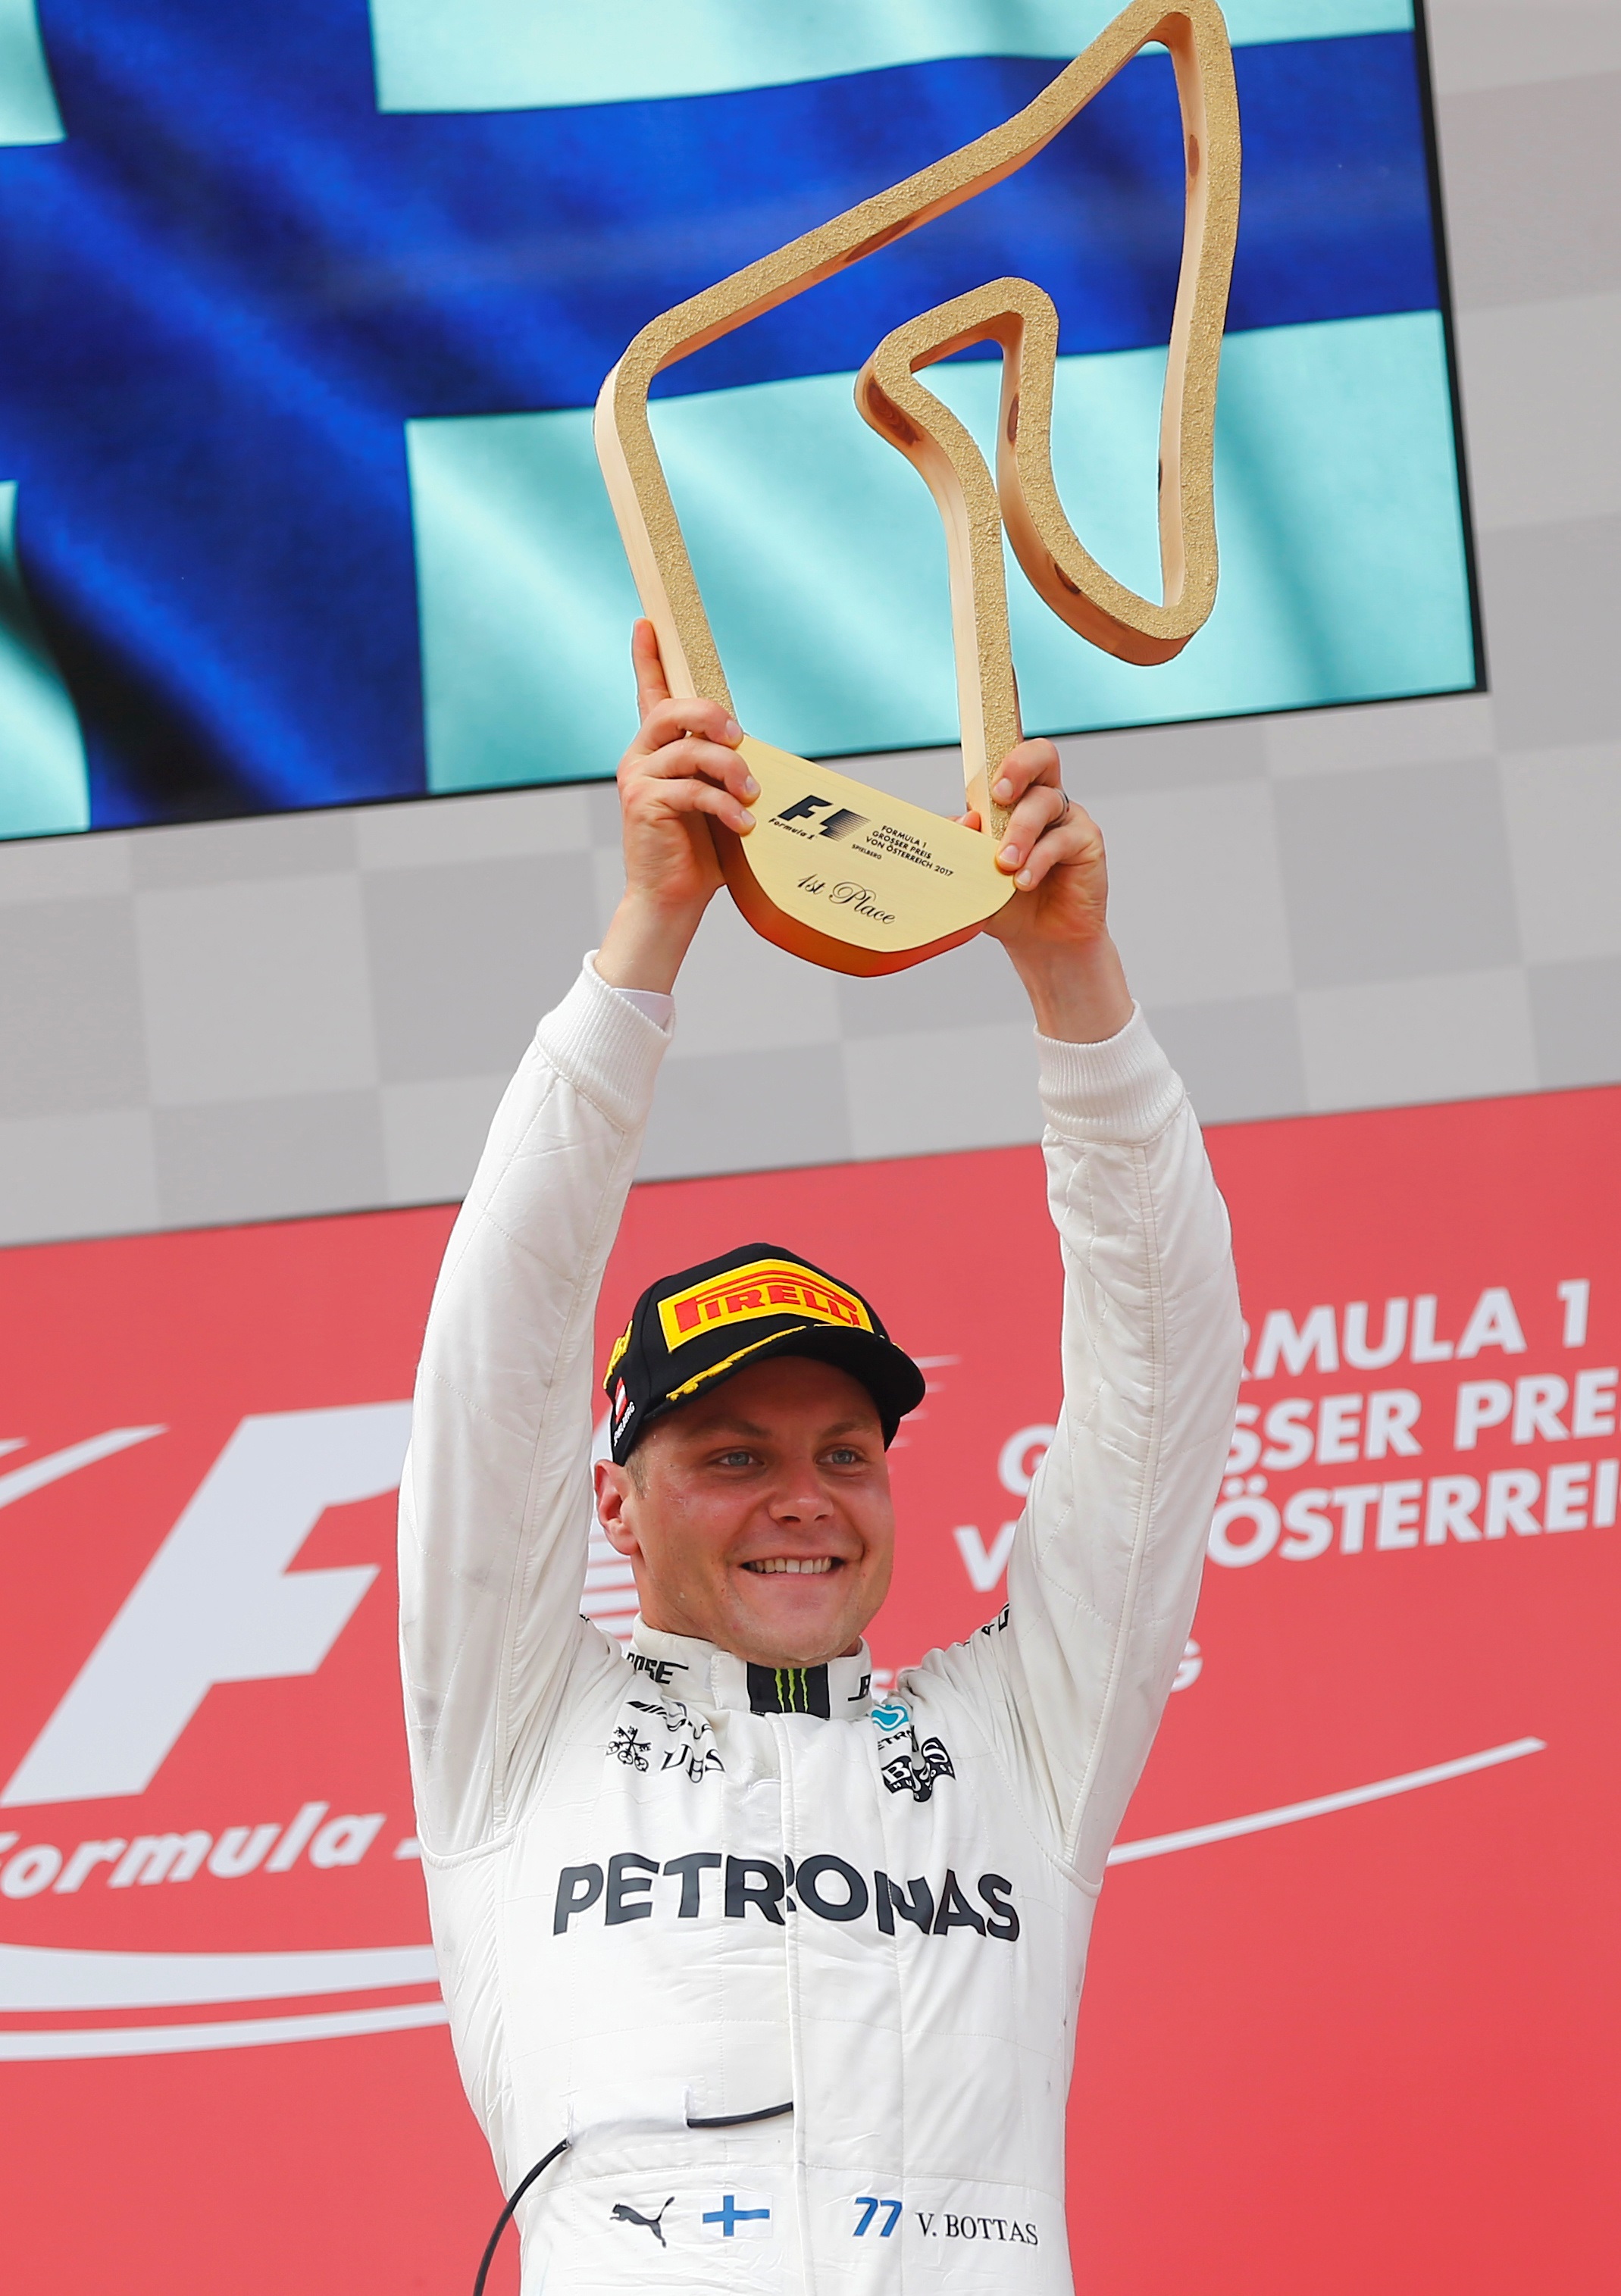 في سباق الجائزة الكبرى النمساوي 2017، فالتيري بوتاس يحتفل بفوزه  (رويترز)